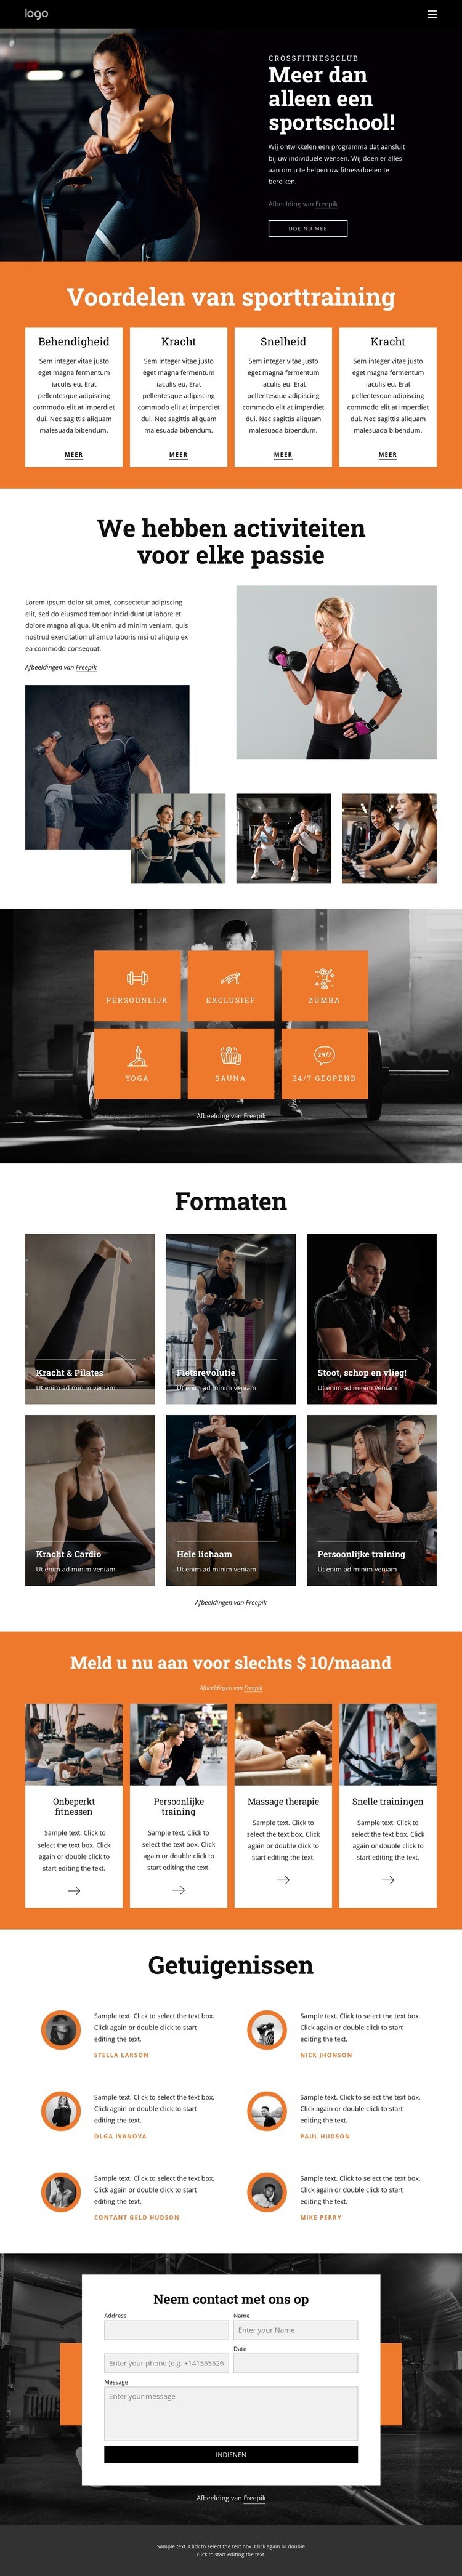 Sluit u aan bij onze community van fitnessliefhebbers Website ontwerp